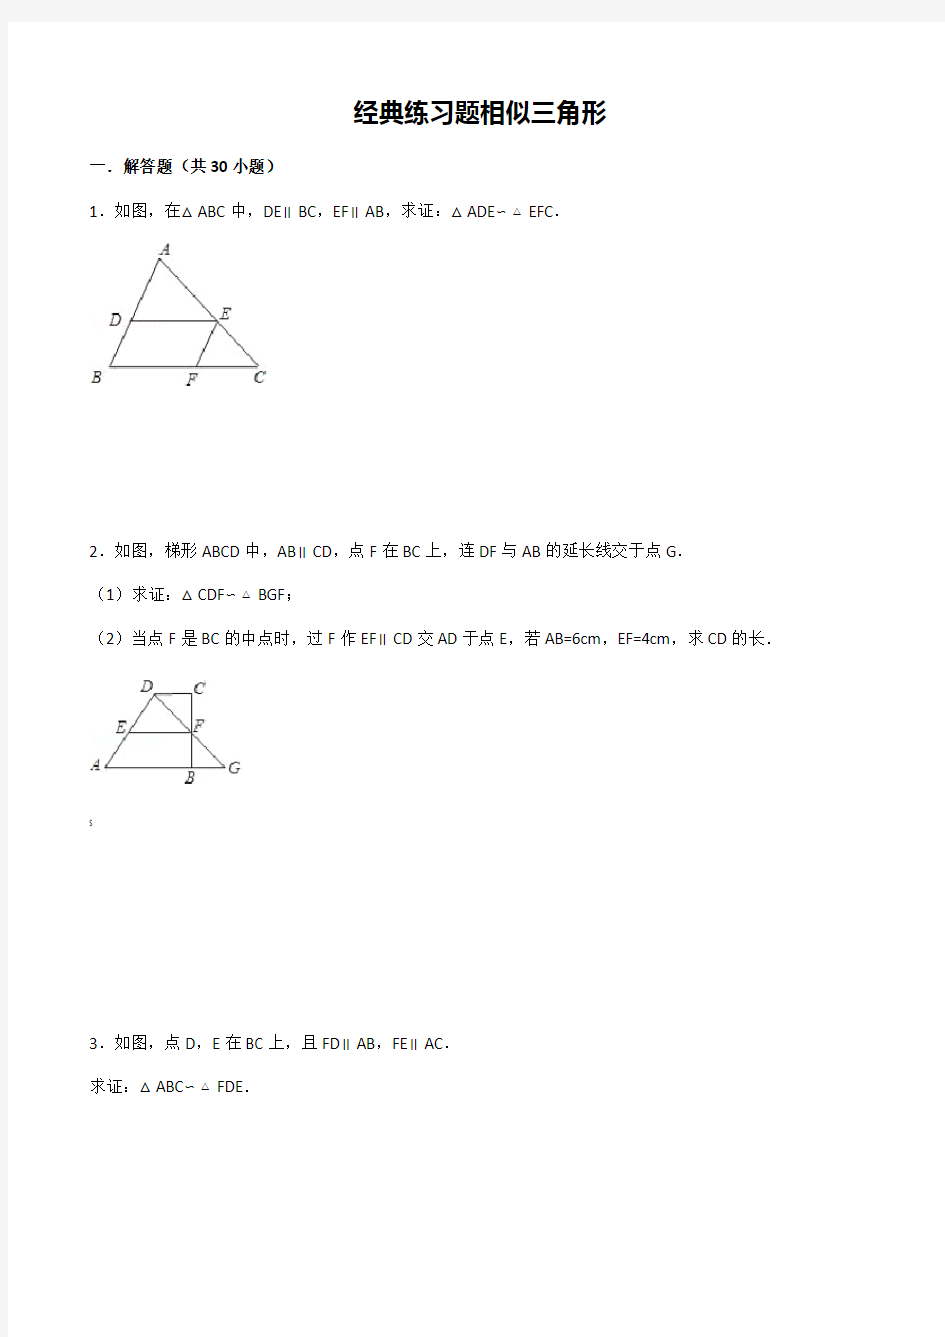 初中数学经典相似三角形练习题(附参考答案)